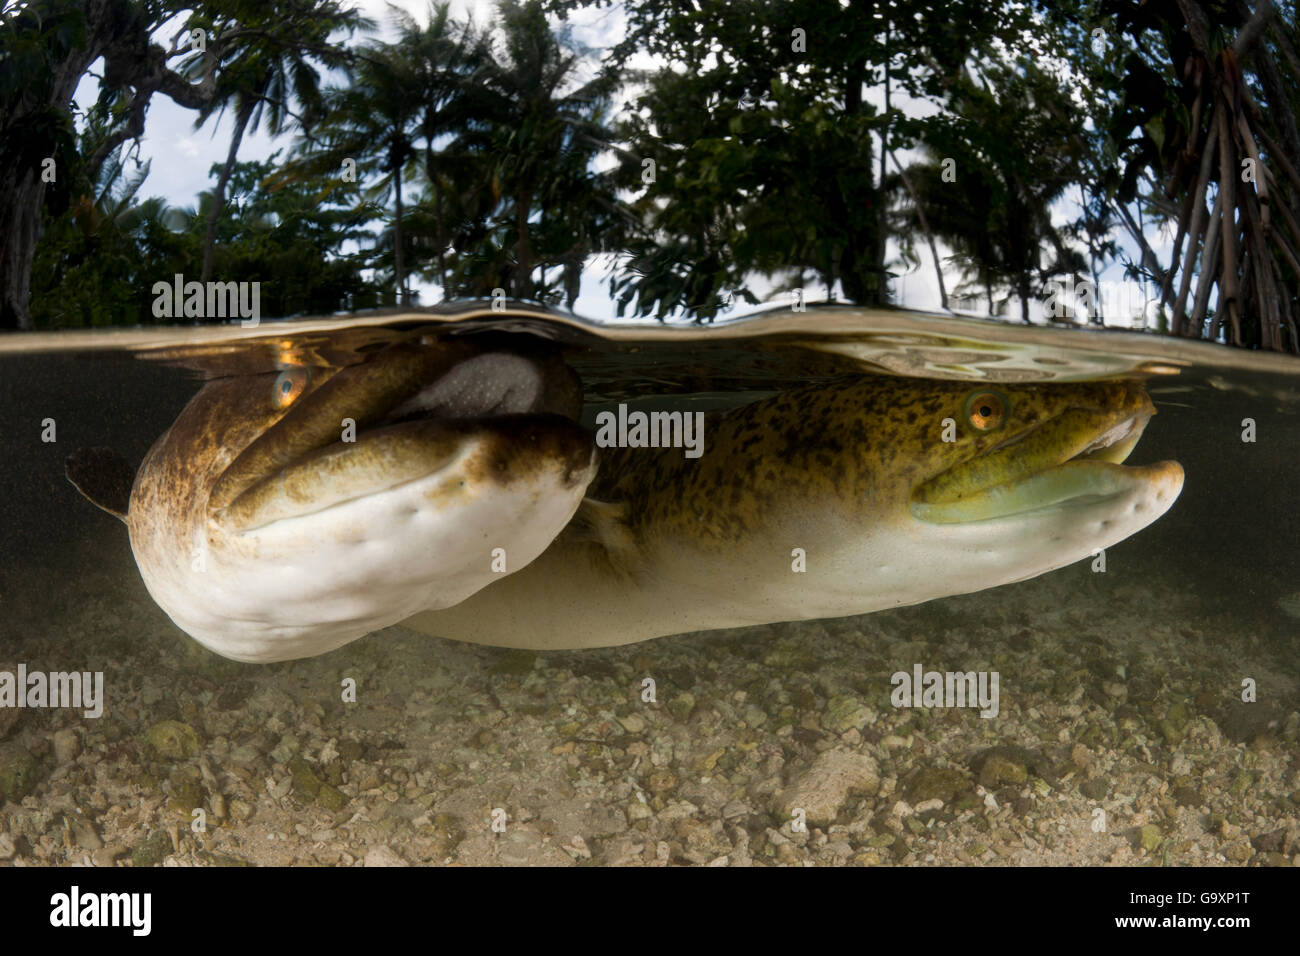 L'eau douce tacheté géant anguille (Anguilla marmorata) dans les eaux peu profondes, en duplex vue, Lissenung Island, Kavieng, Nouvelle Guinée. Secon Banque D'Images